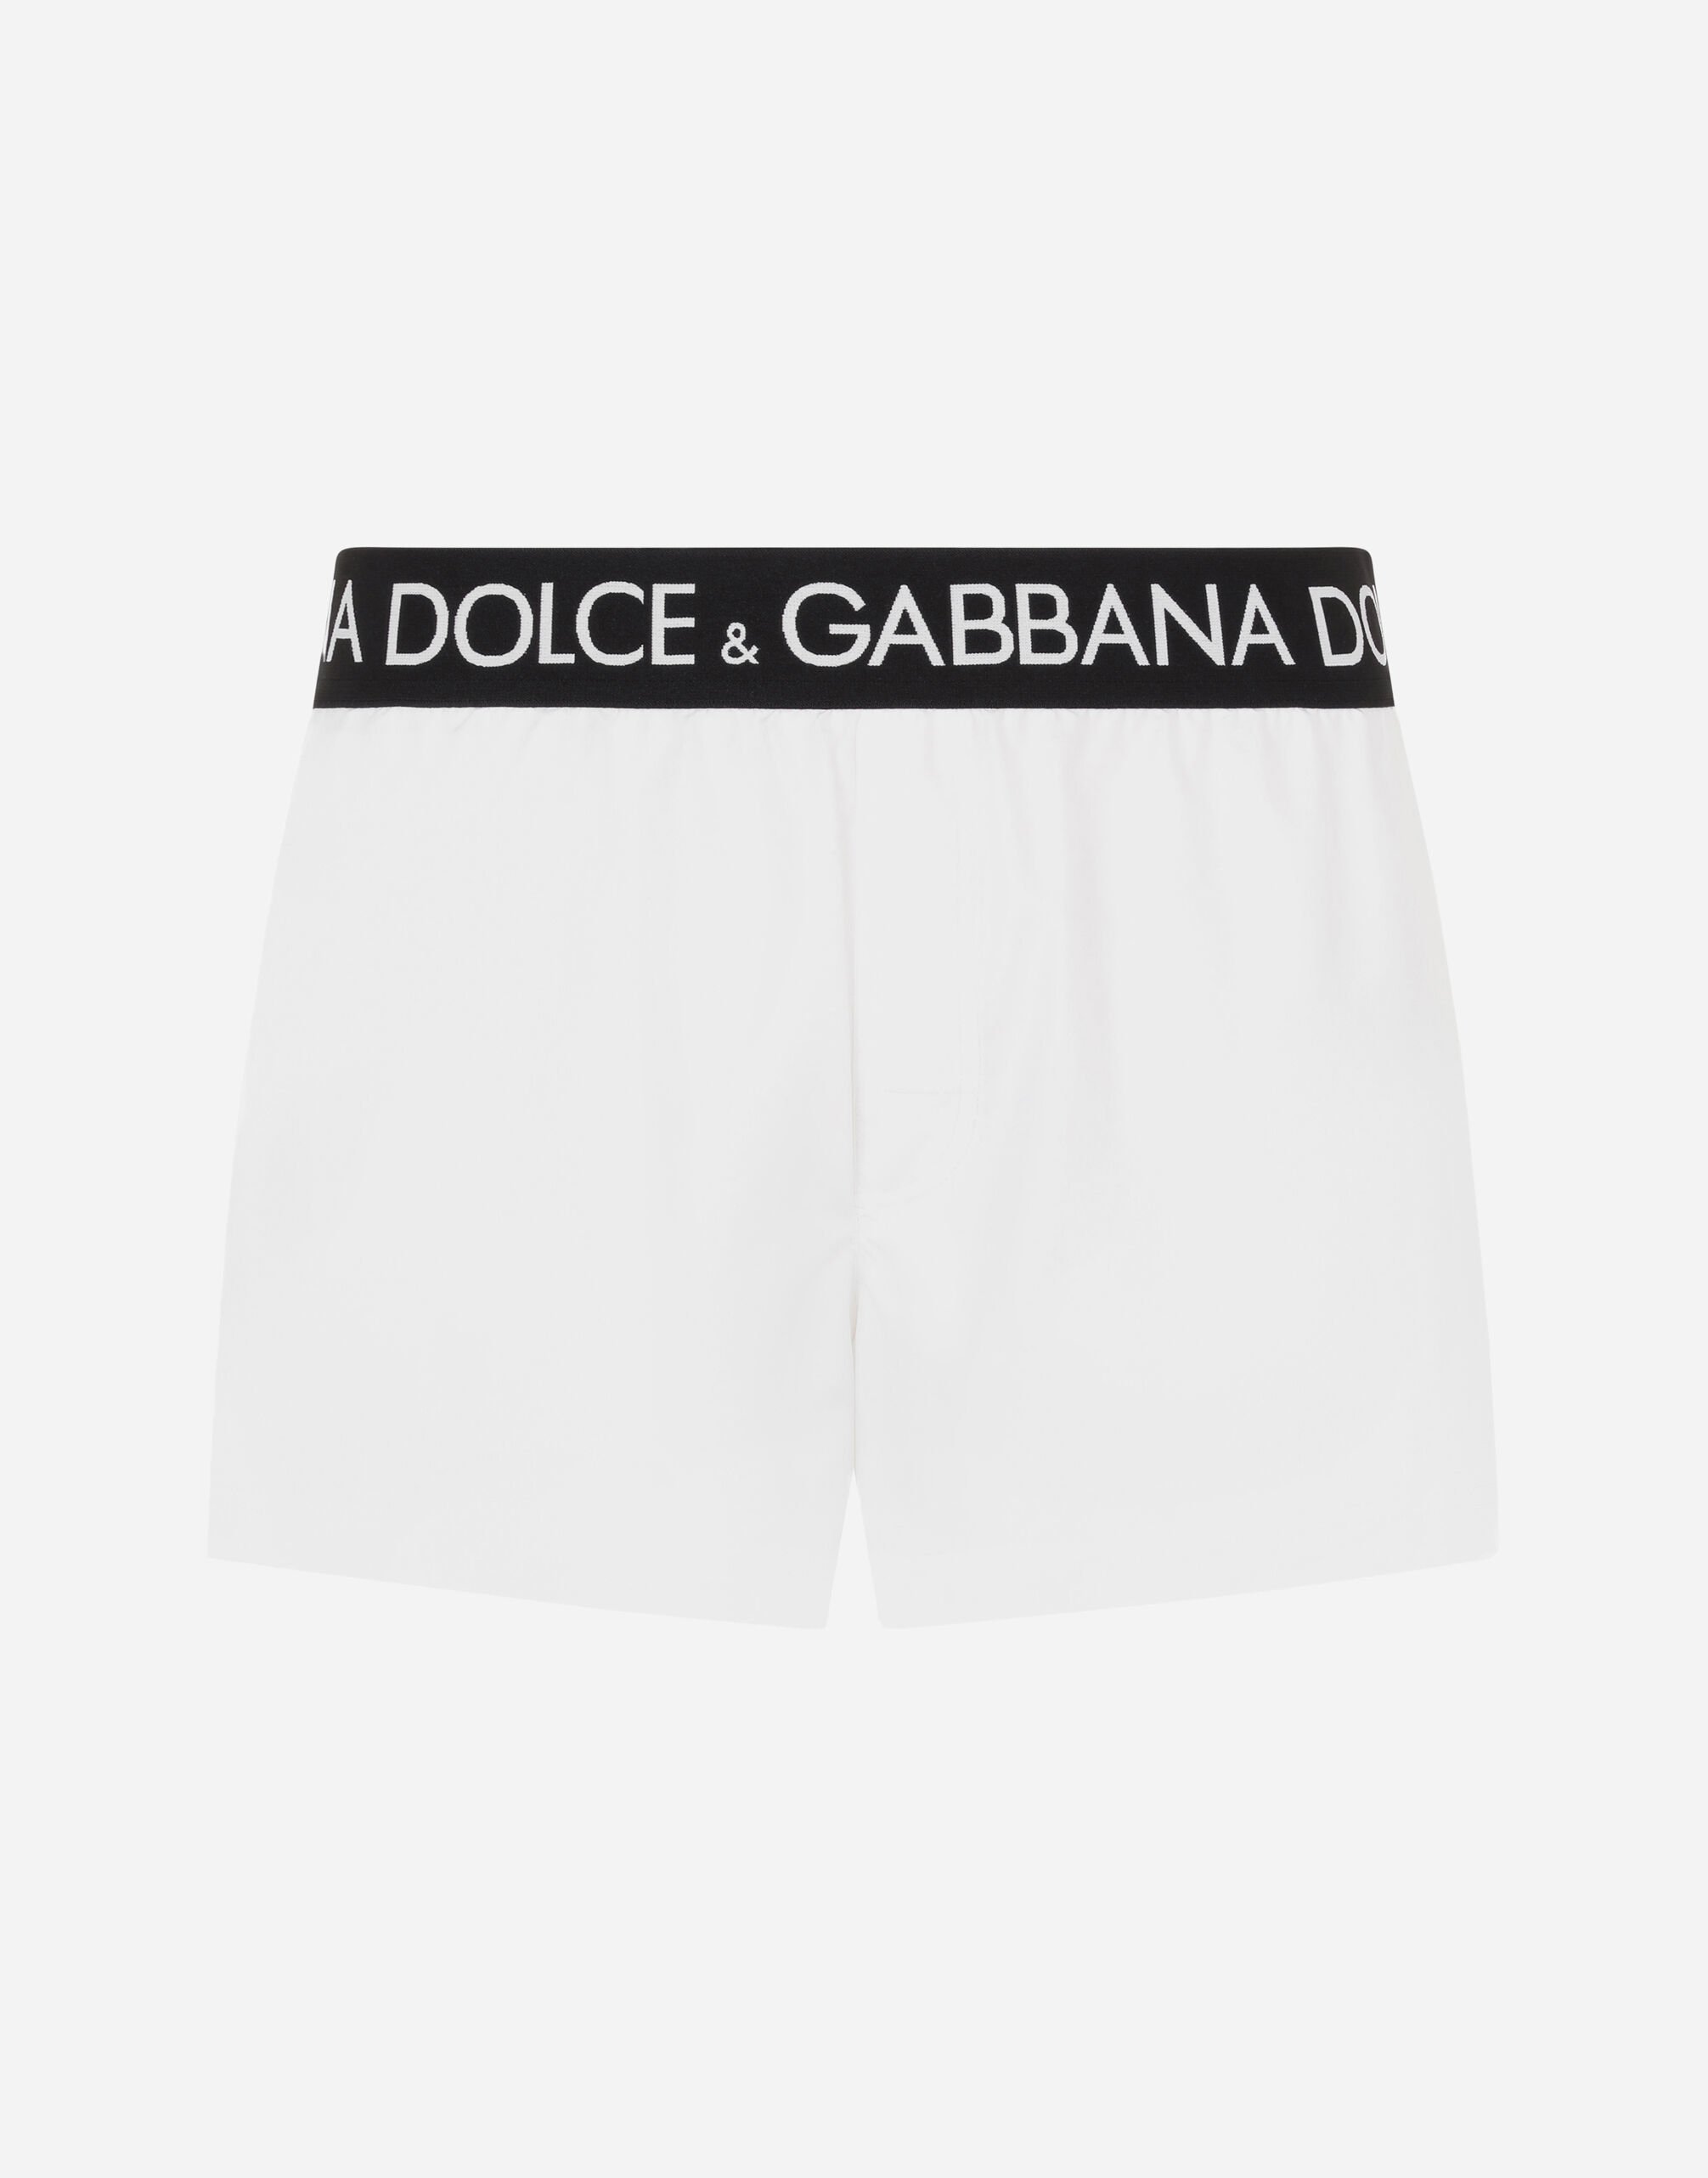 Dolce&Gabbana Kurze Bade-Boxershorts mit elastischem Logobund Schwarz GY6IETFUFJR